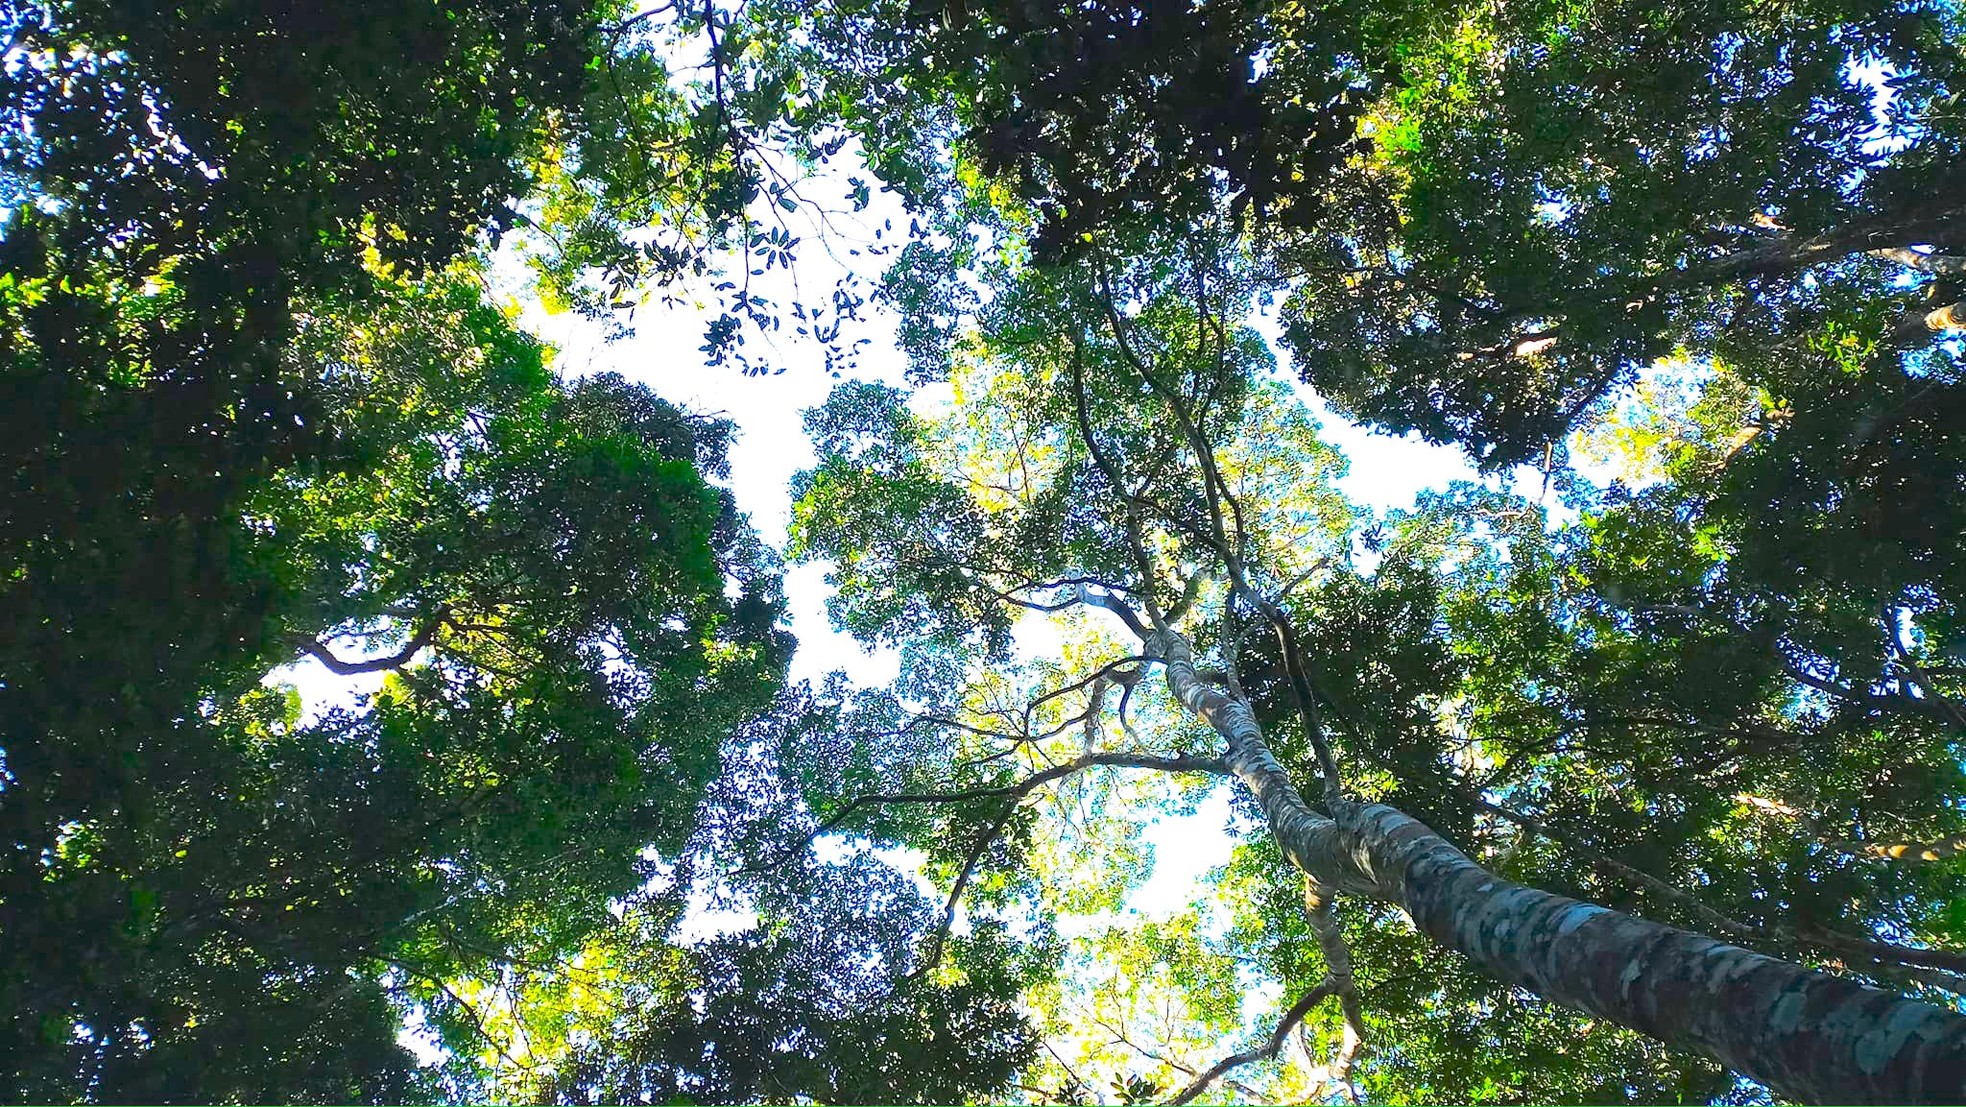 Ngắm cổ thụ Sa mu dầu hơn 2.000 tuổi trong lõi rừng già, được công nhận là cây di sản Việt Nam - Ảnh 14.